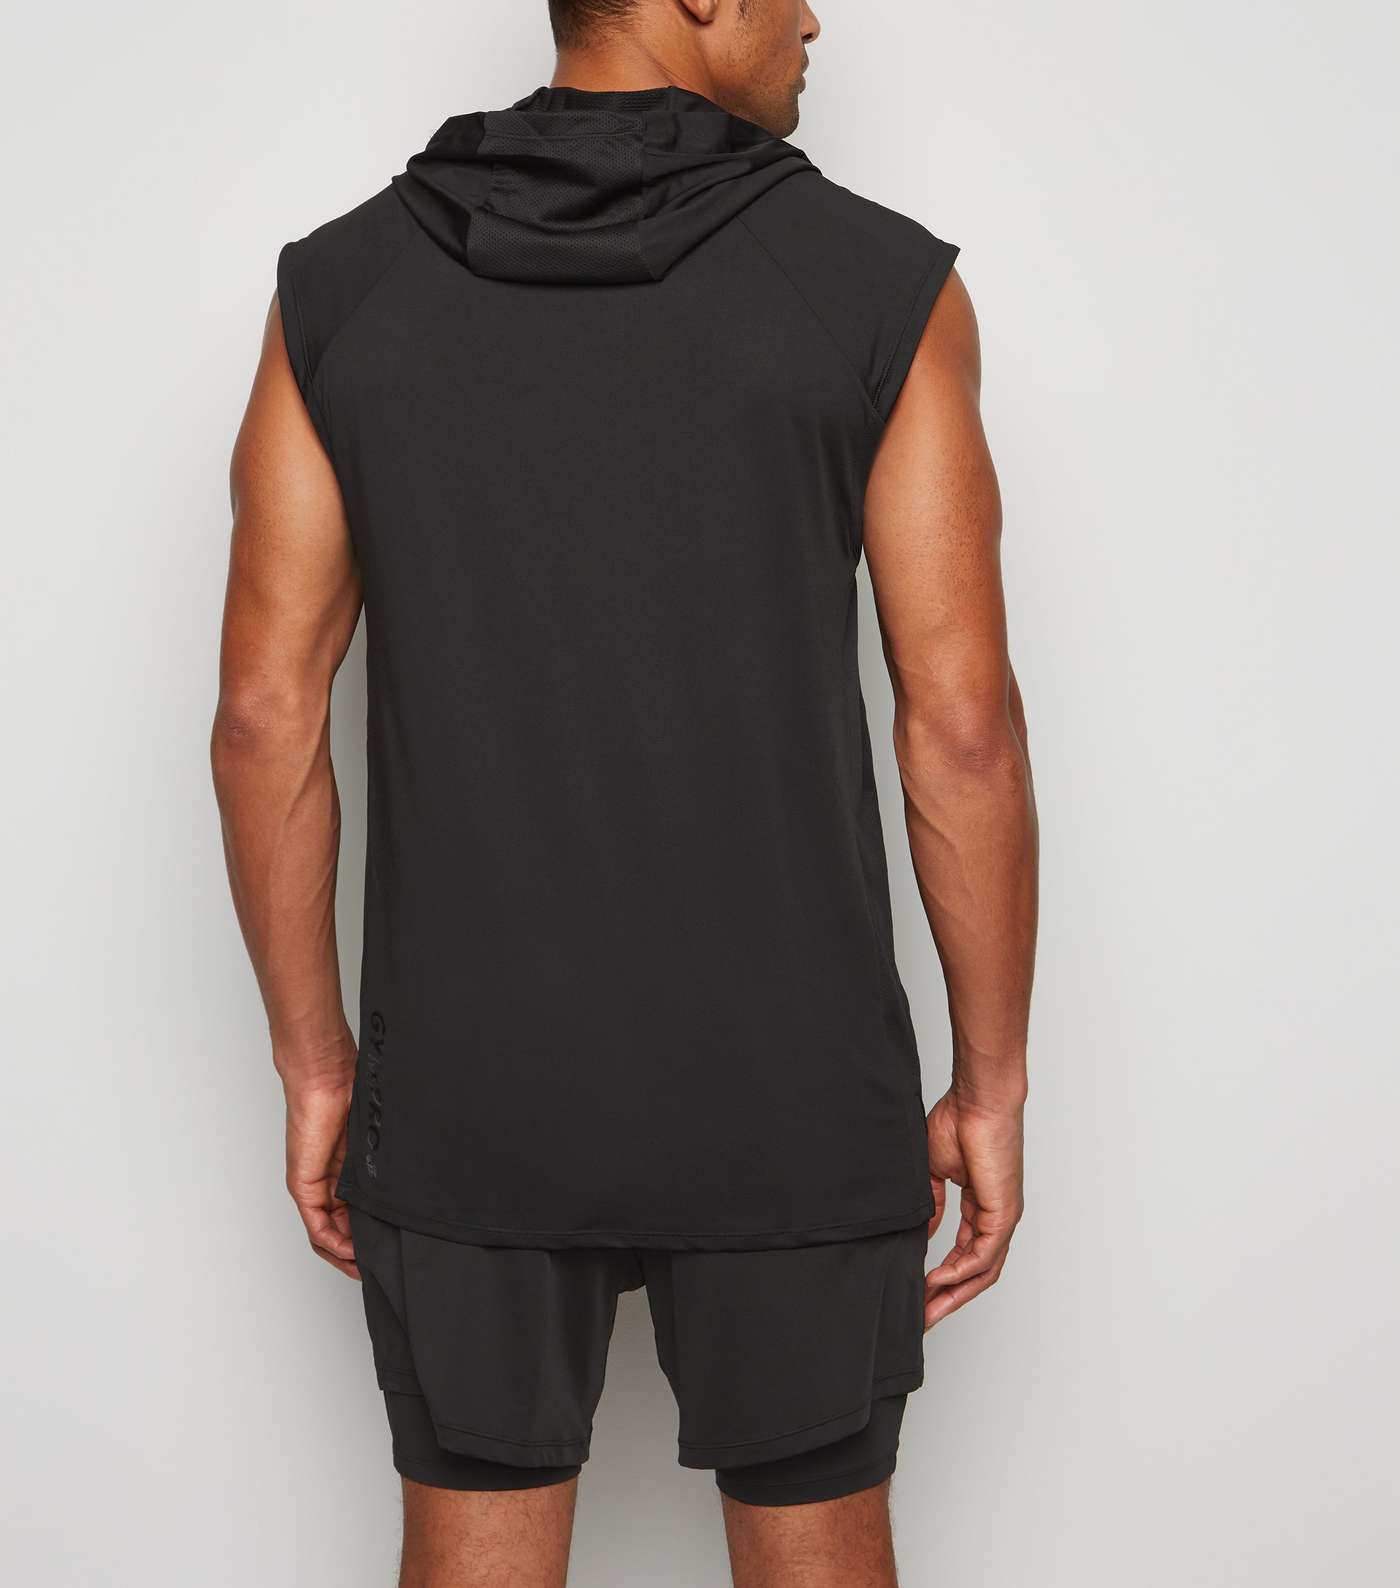 GymPro Black Mesh Panel Hooded Vest Image 3